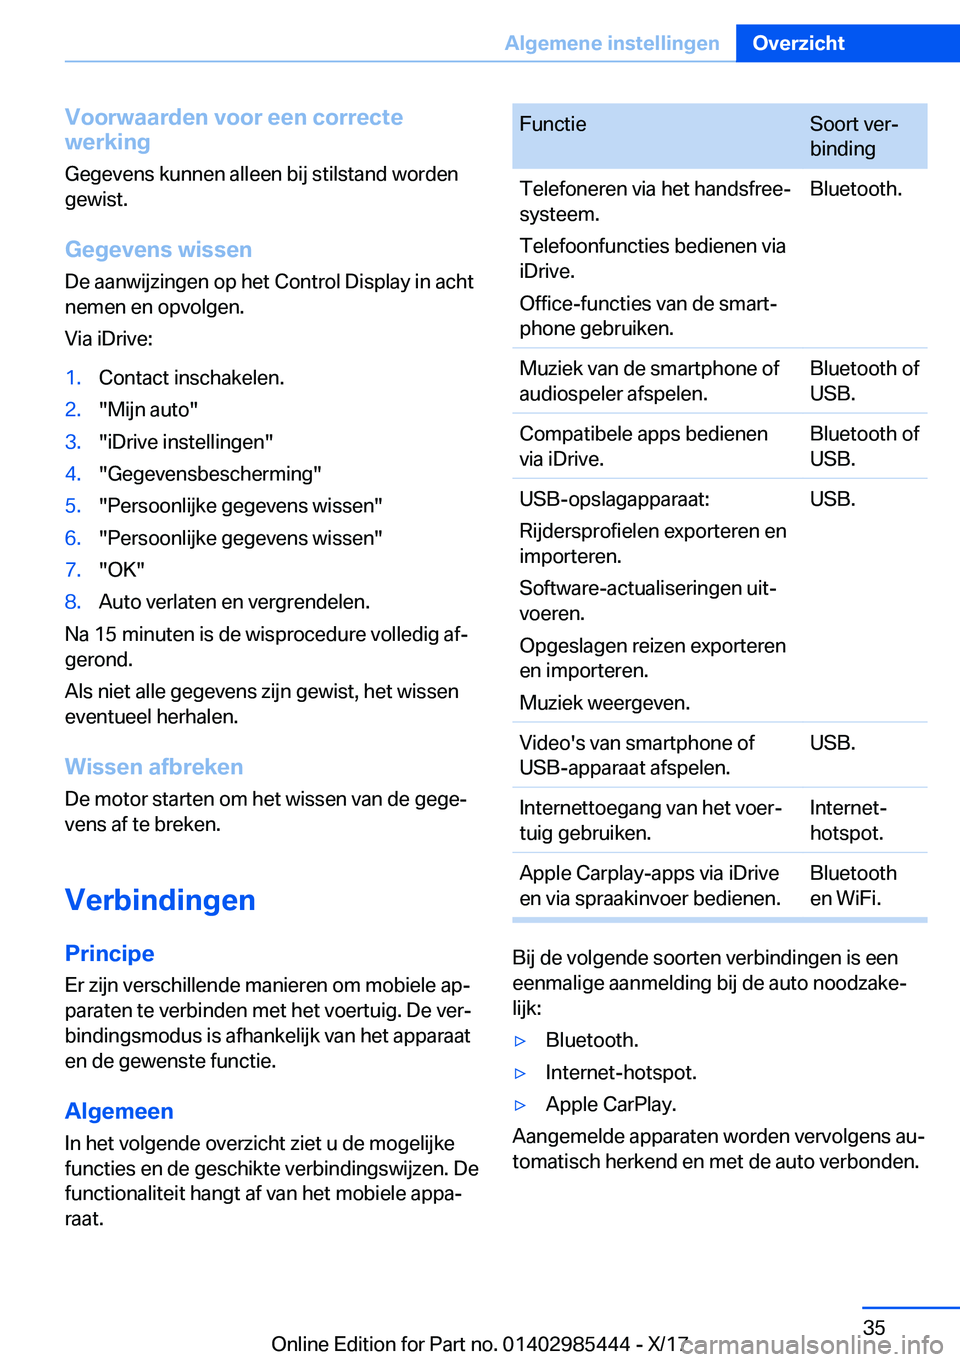 BMW X1 2018  Instructieboekjes (in Dutch) �V�o�o�r�w�a�a�r�d�e�n��v�o�o�r��e�e�n��c�o�r�r�e�c�t�e
�w�e�r�k�i�n�g
�G�e�g�e�v�e�n�s� �k�u�n�n�e�n� �a�l�l�e�e�n� �b�i�j� �s�t�i�l�s�t�a�n�d� �w�o�r�d�e�n�g�e�w�i�s�t�.
�G�e�g�e�v�e�n�s��w�i�s�